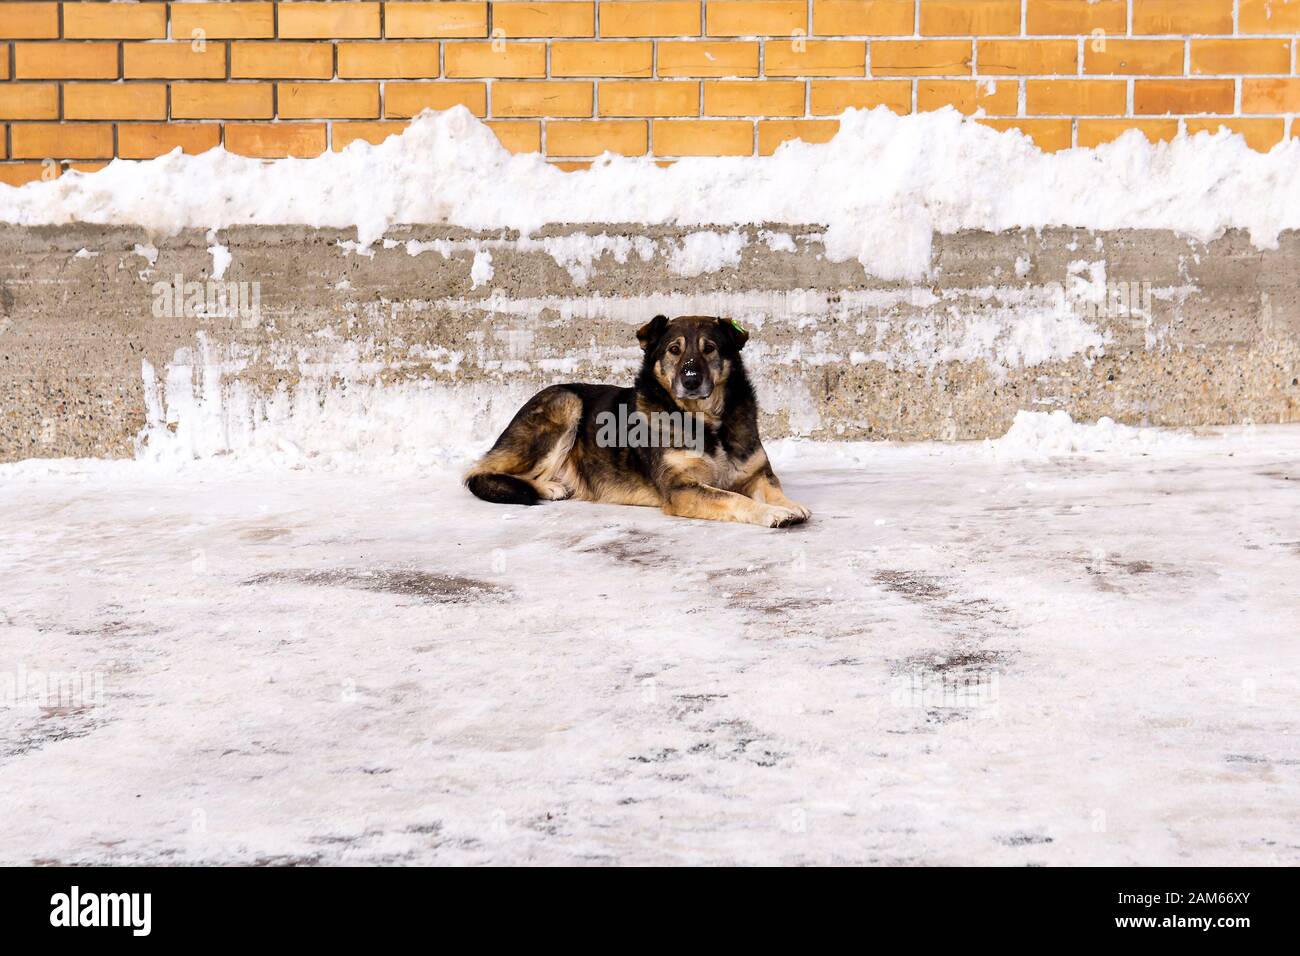 le chien de rue stérilisé avec une étiquette de service vétérinaire sur son oreille se trouve dans la neige contre un mur à l'extérieur Banque D'Images